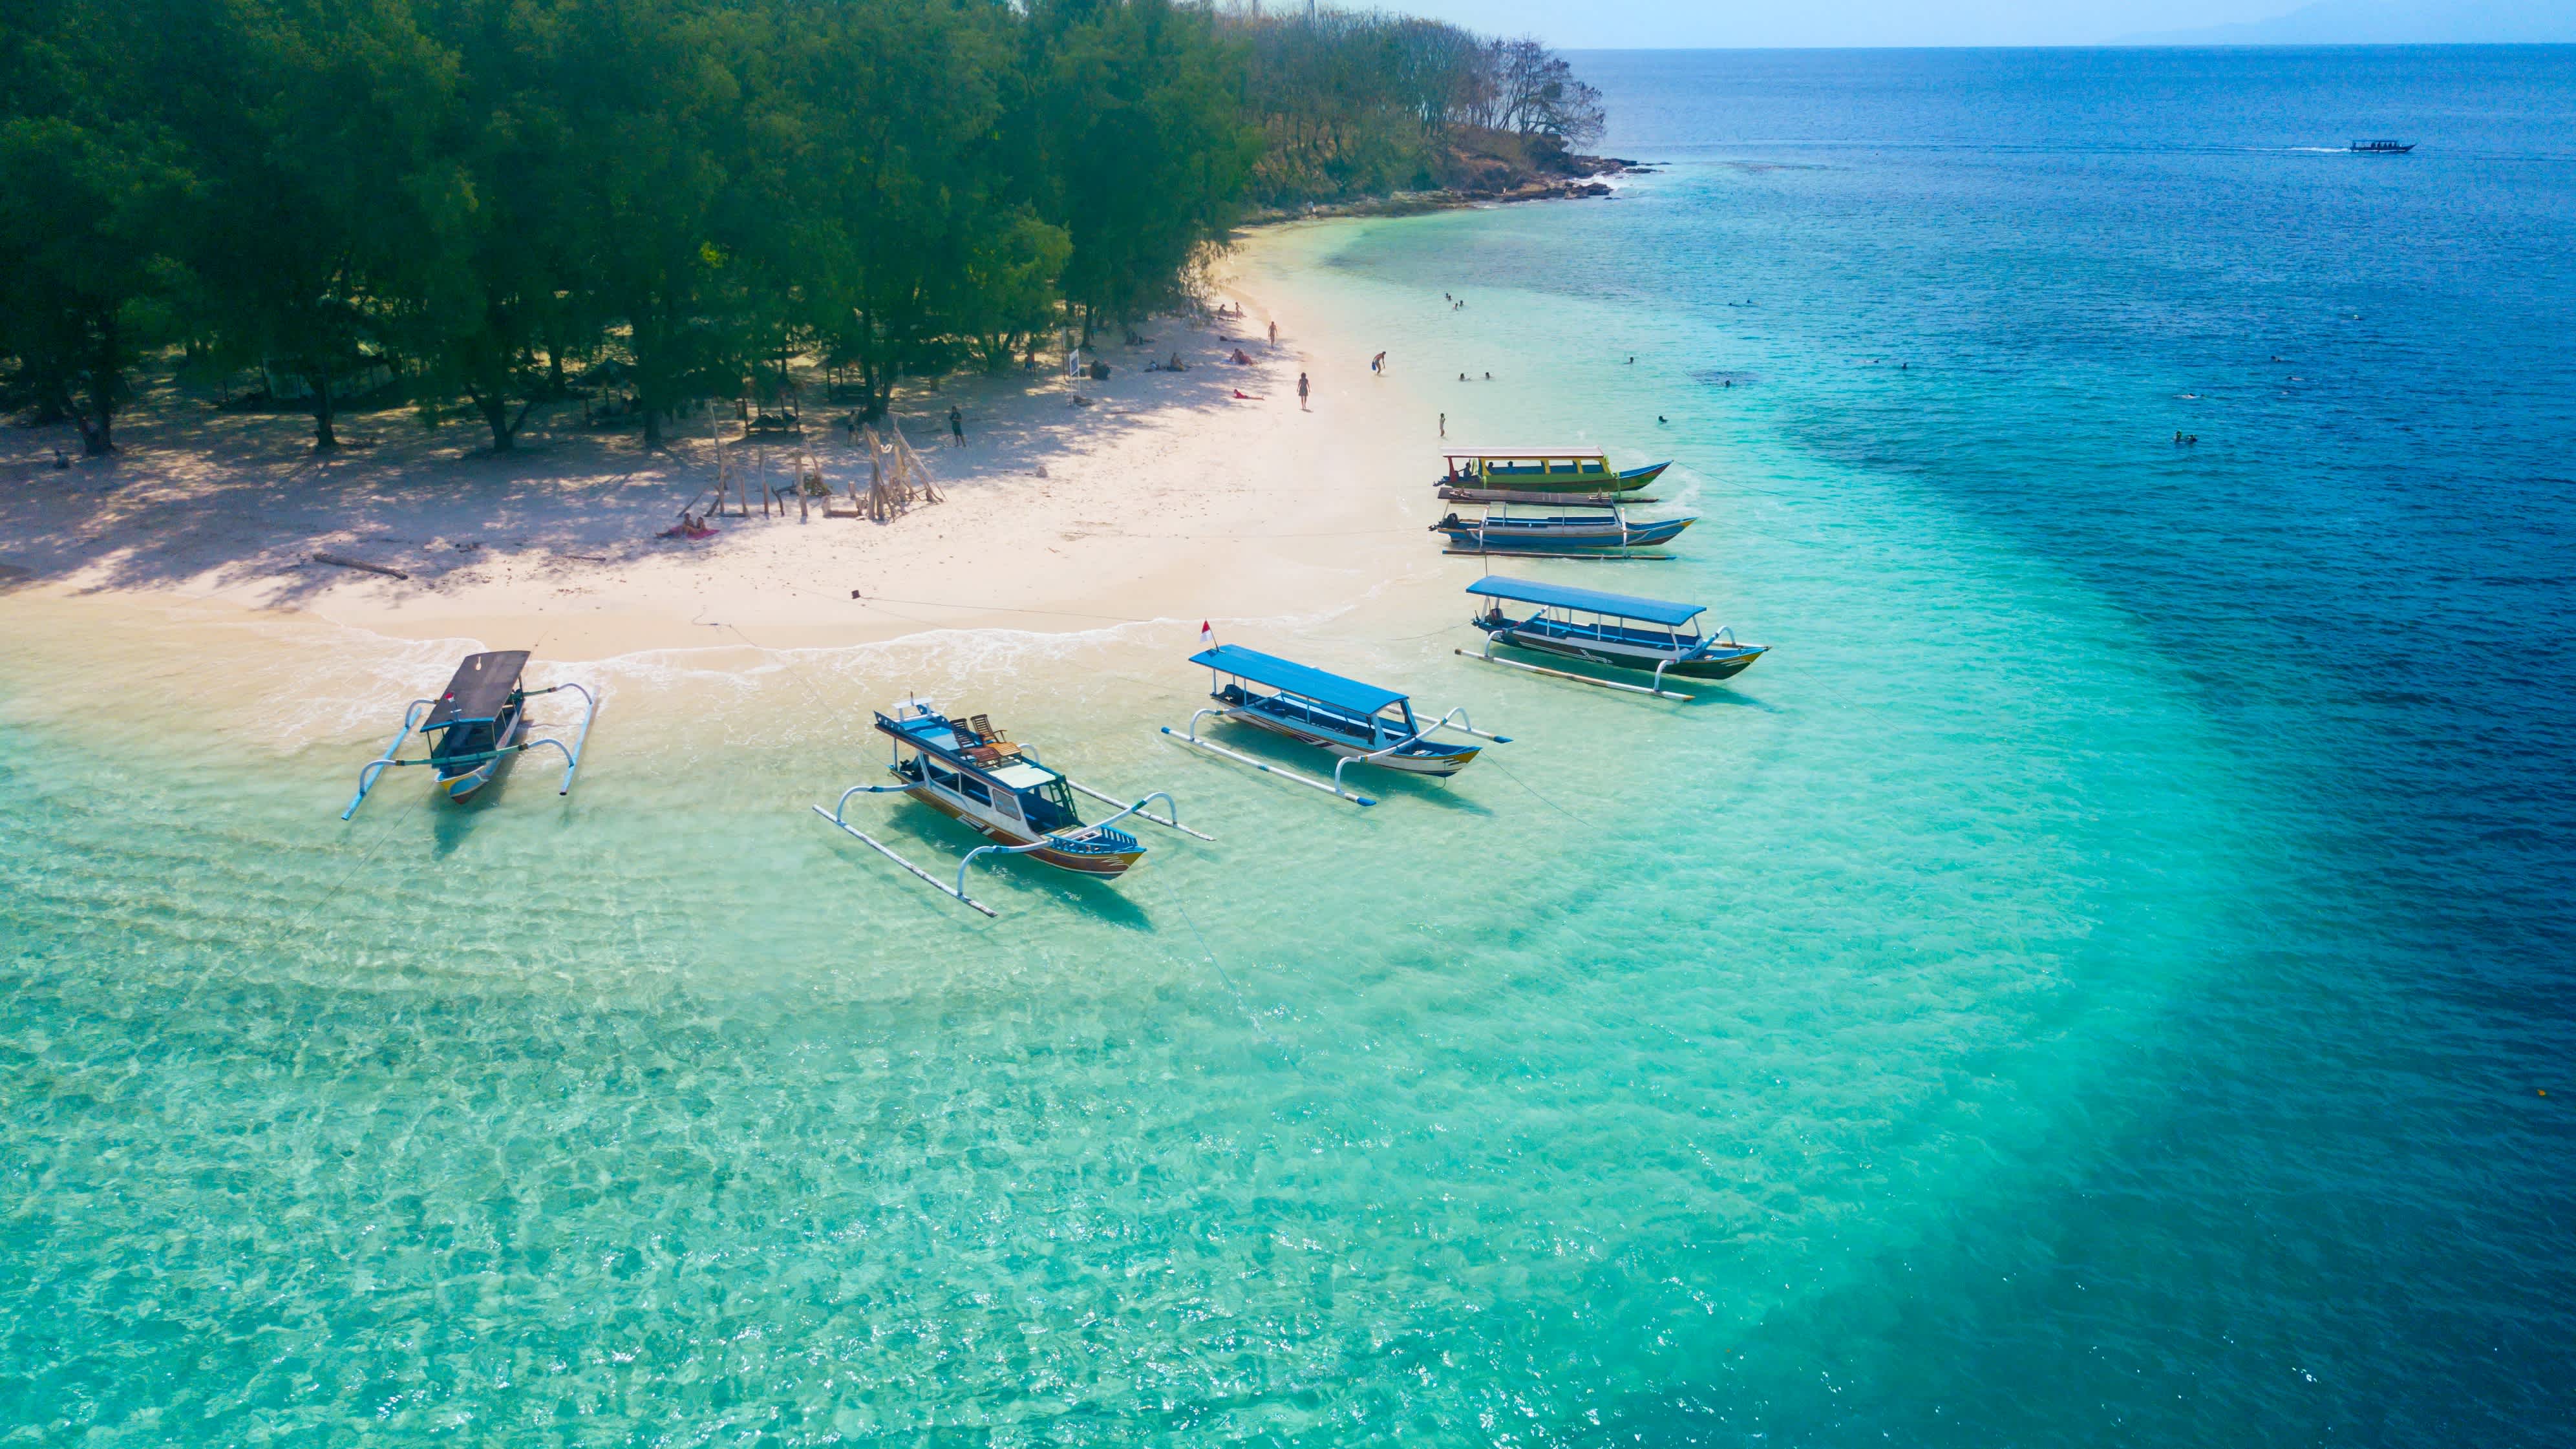 Bateaux au bord de la plage de sable blanc et de l'eau turquoise, îles Gili, Lombok, Indonésie